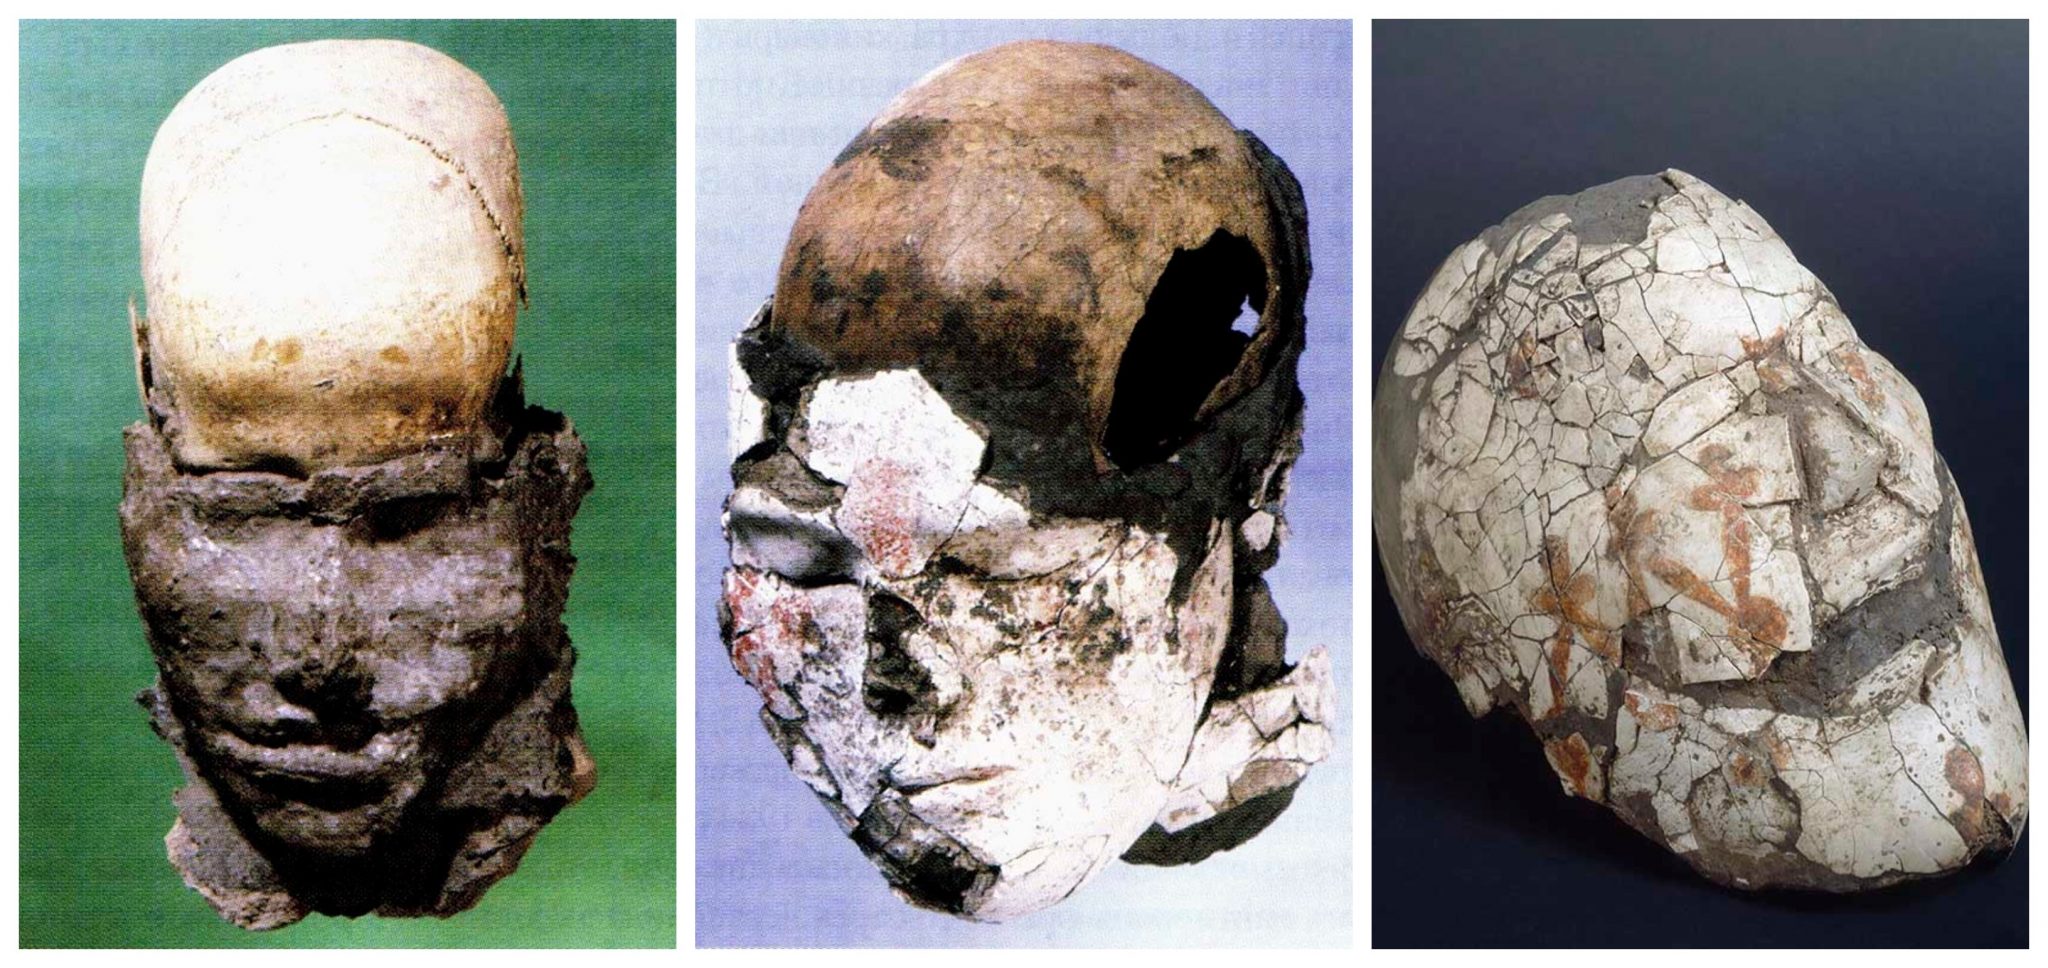 Os rostos moldados nos crânios eram frequentemente cobertos com uma fina camada de gesso pintada com ornamentos.